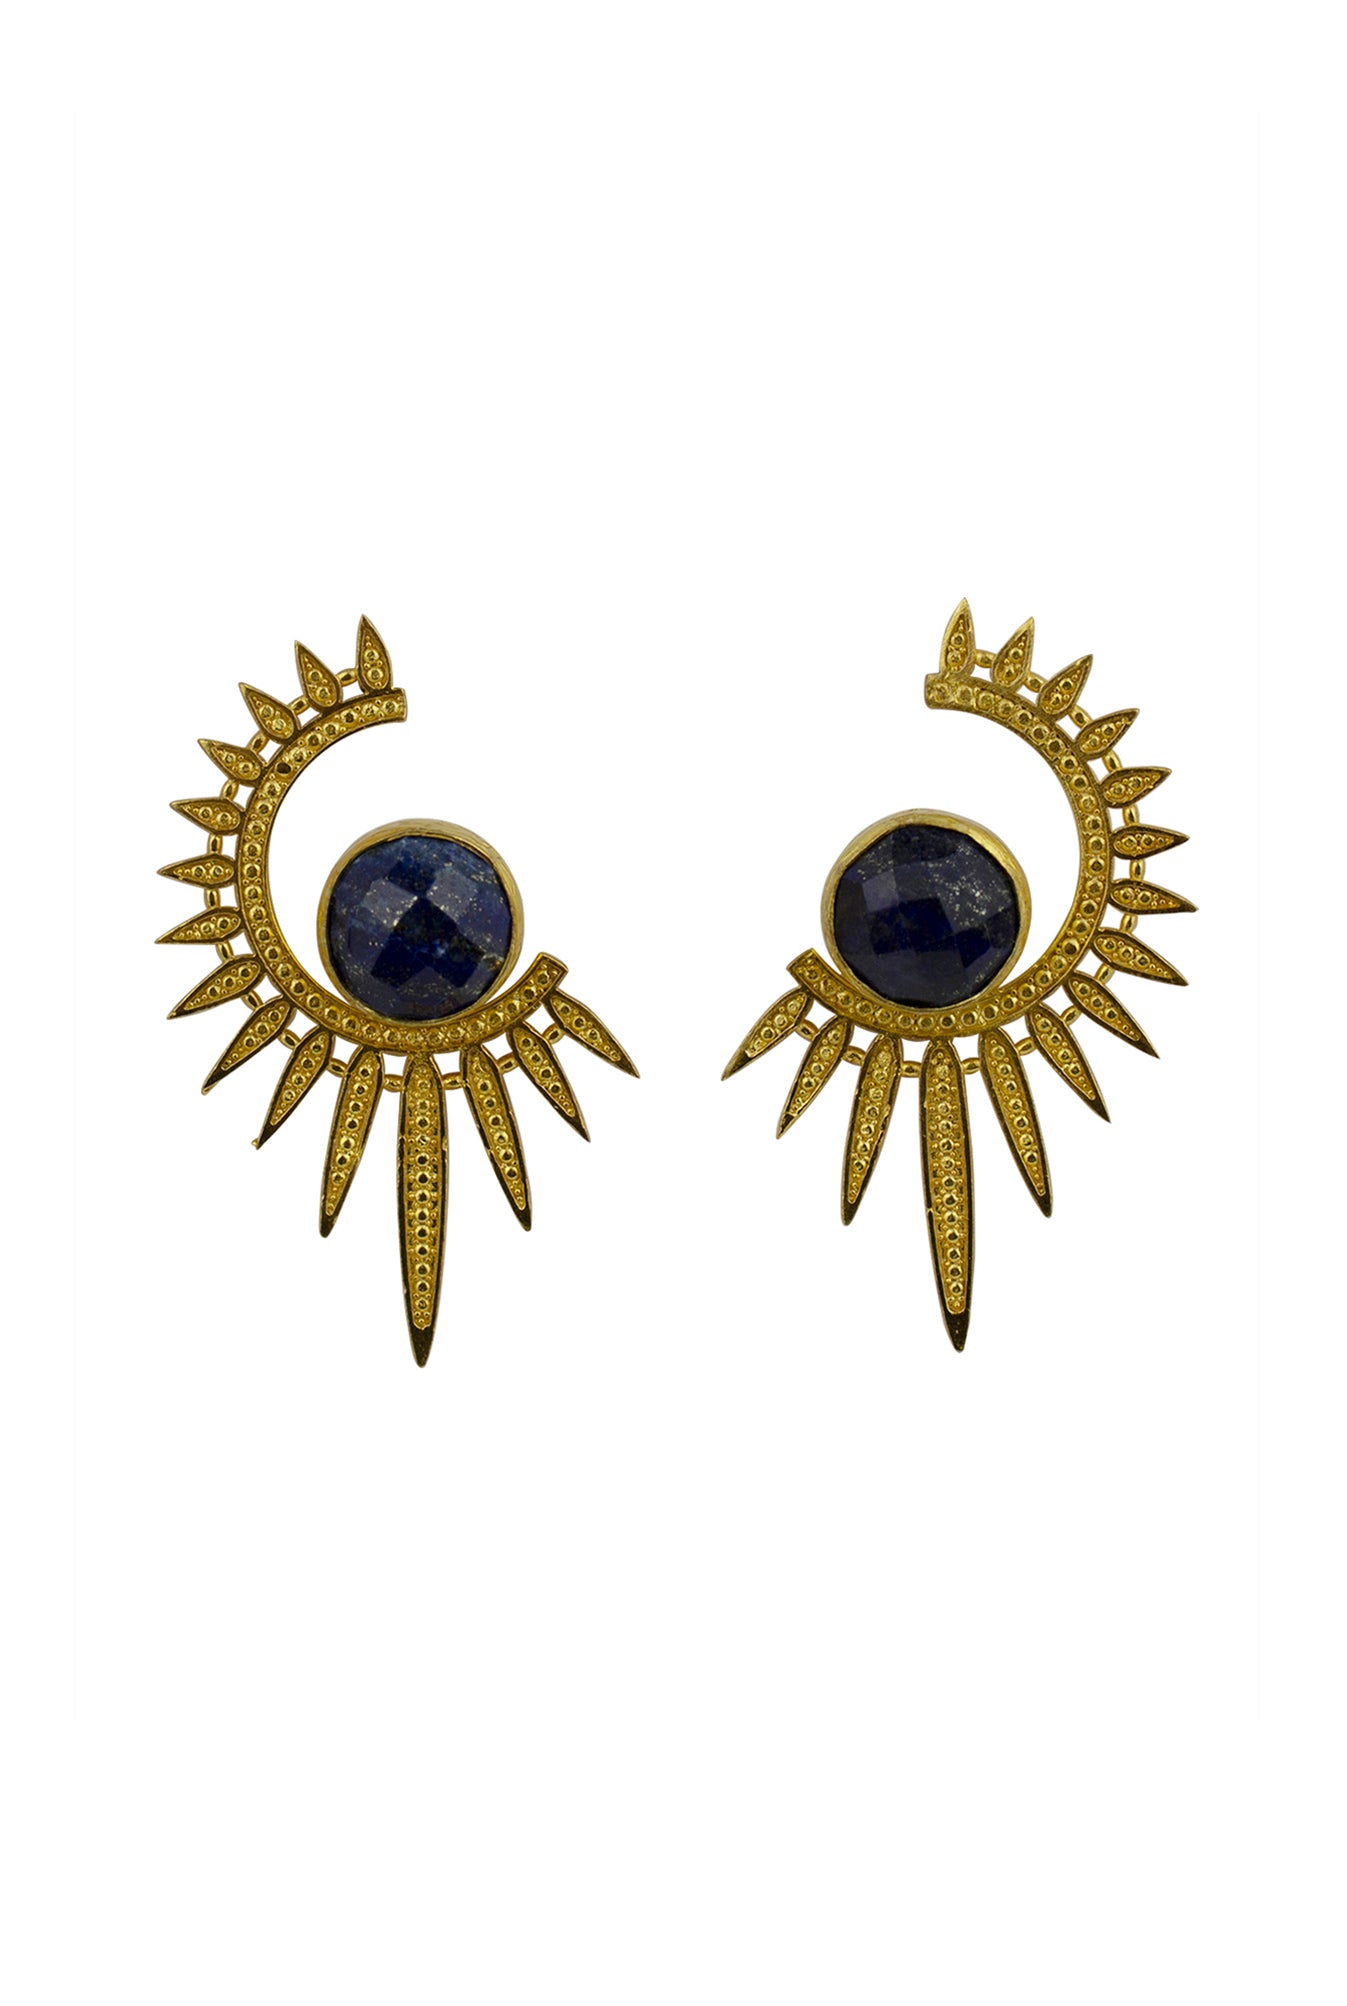 Sunray Lapiz Lazuli Earrings